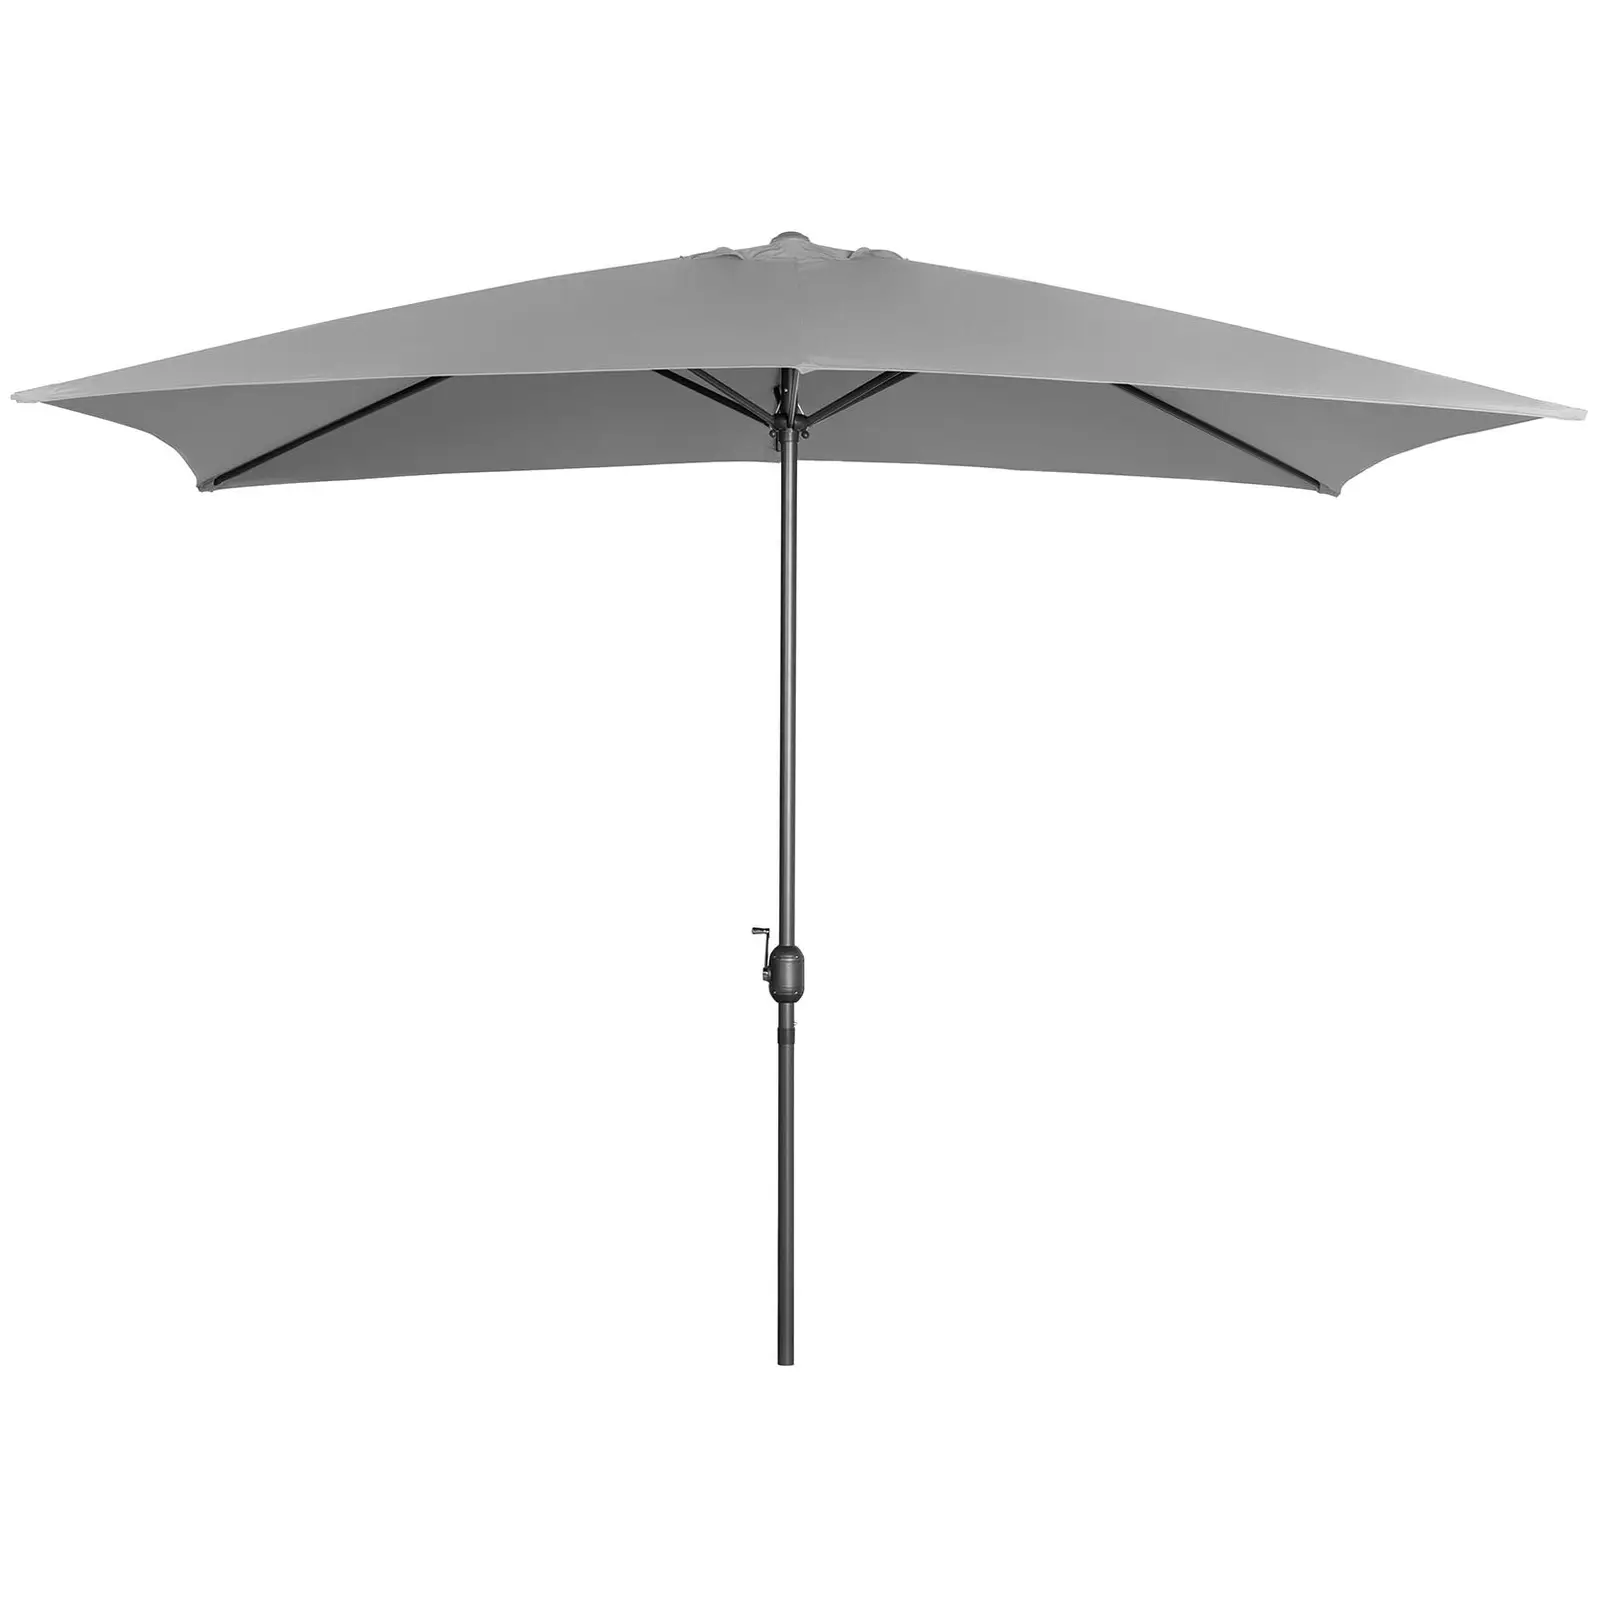 Grand parasol - Gris foncé - Rectangulaire - 200 x 300 cm